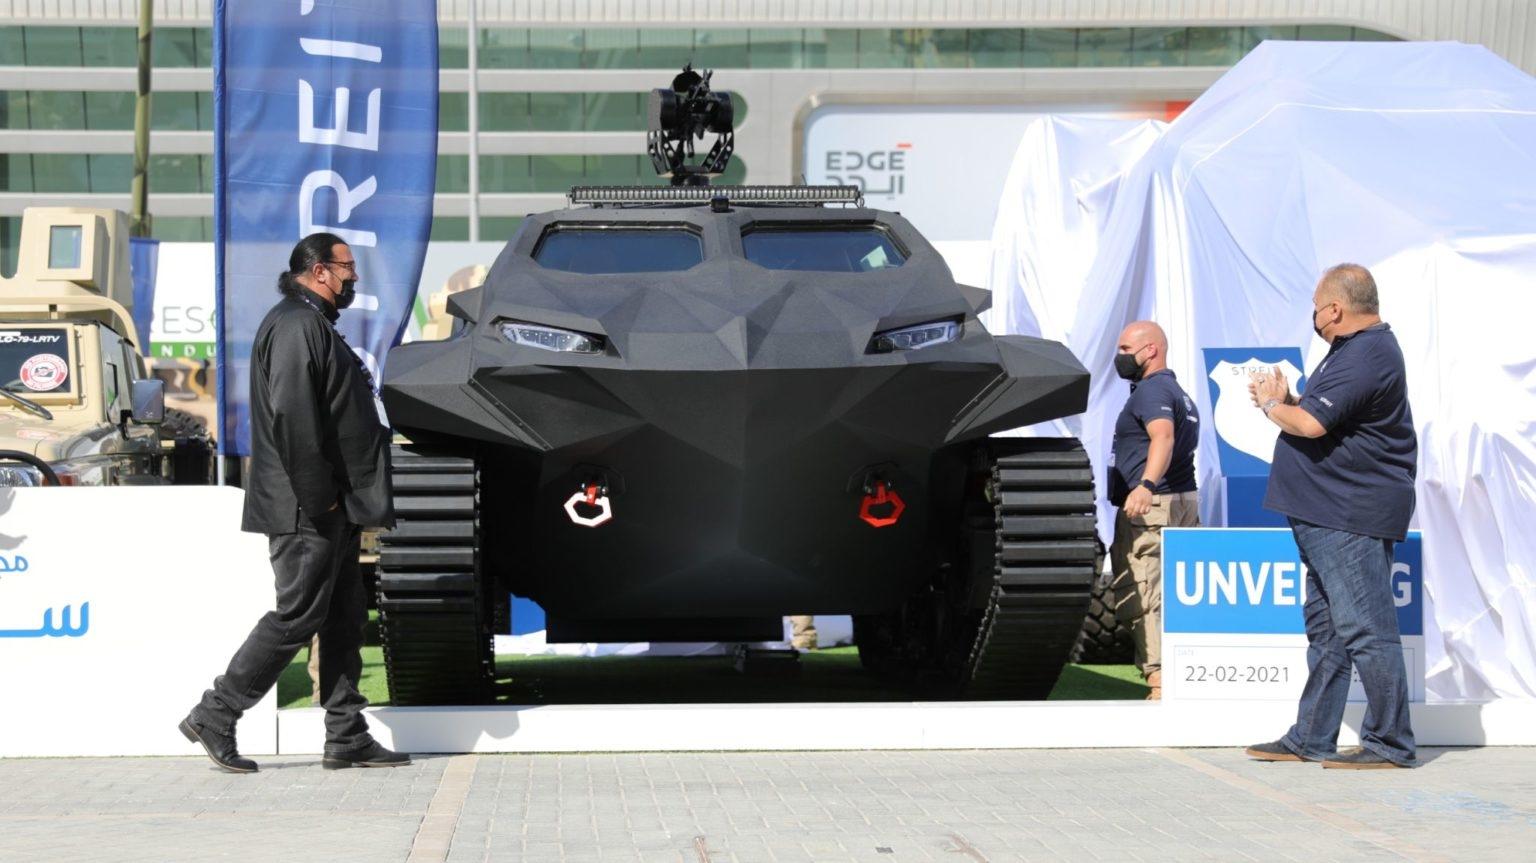 Стивен Сигал представил в ОАЭ бронированную амфибию-электромобиль